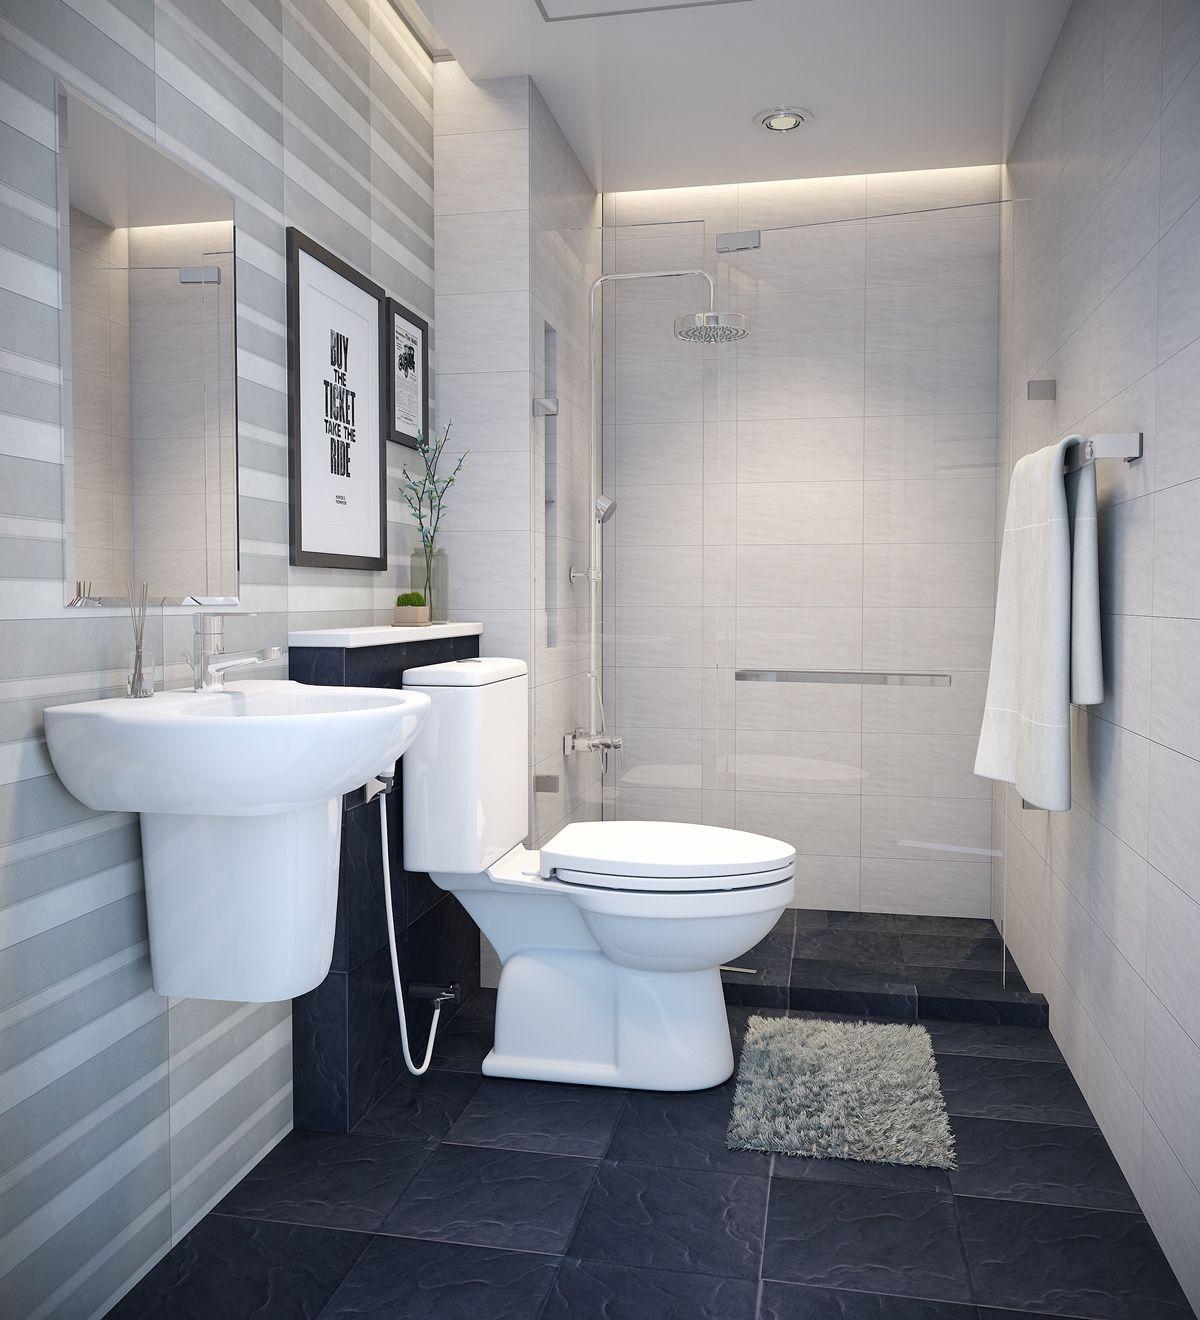 Phòng tắm 4m2: Bạn đang tìm kiếm cách trang trí lại phòng tắm nhỏ của mình? Với phòng tắm chỉ có 4m2, bạn không cần phải lo lắng vì chúng tôi sẽ tư vấn cho bạn cách sử dụng không gian của mình hiệu quả. Chỉ cần một chút nhạy cảm và sự sáng tạo, bạn có thể tạo ra một không gian phòng tắm đẹp và tiện nghi.